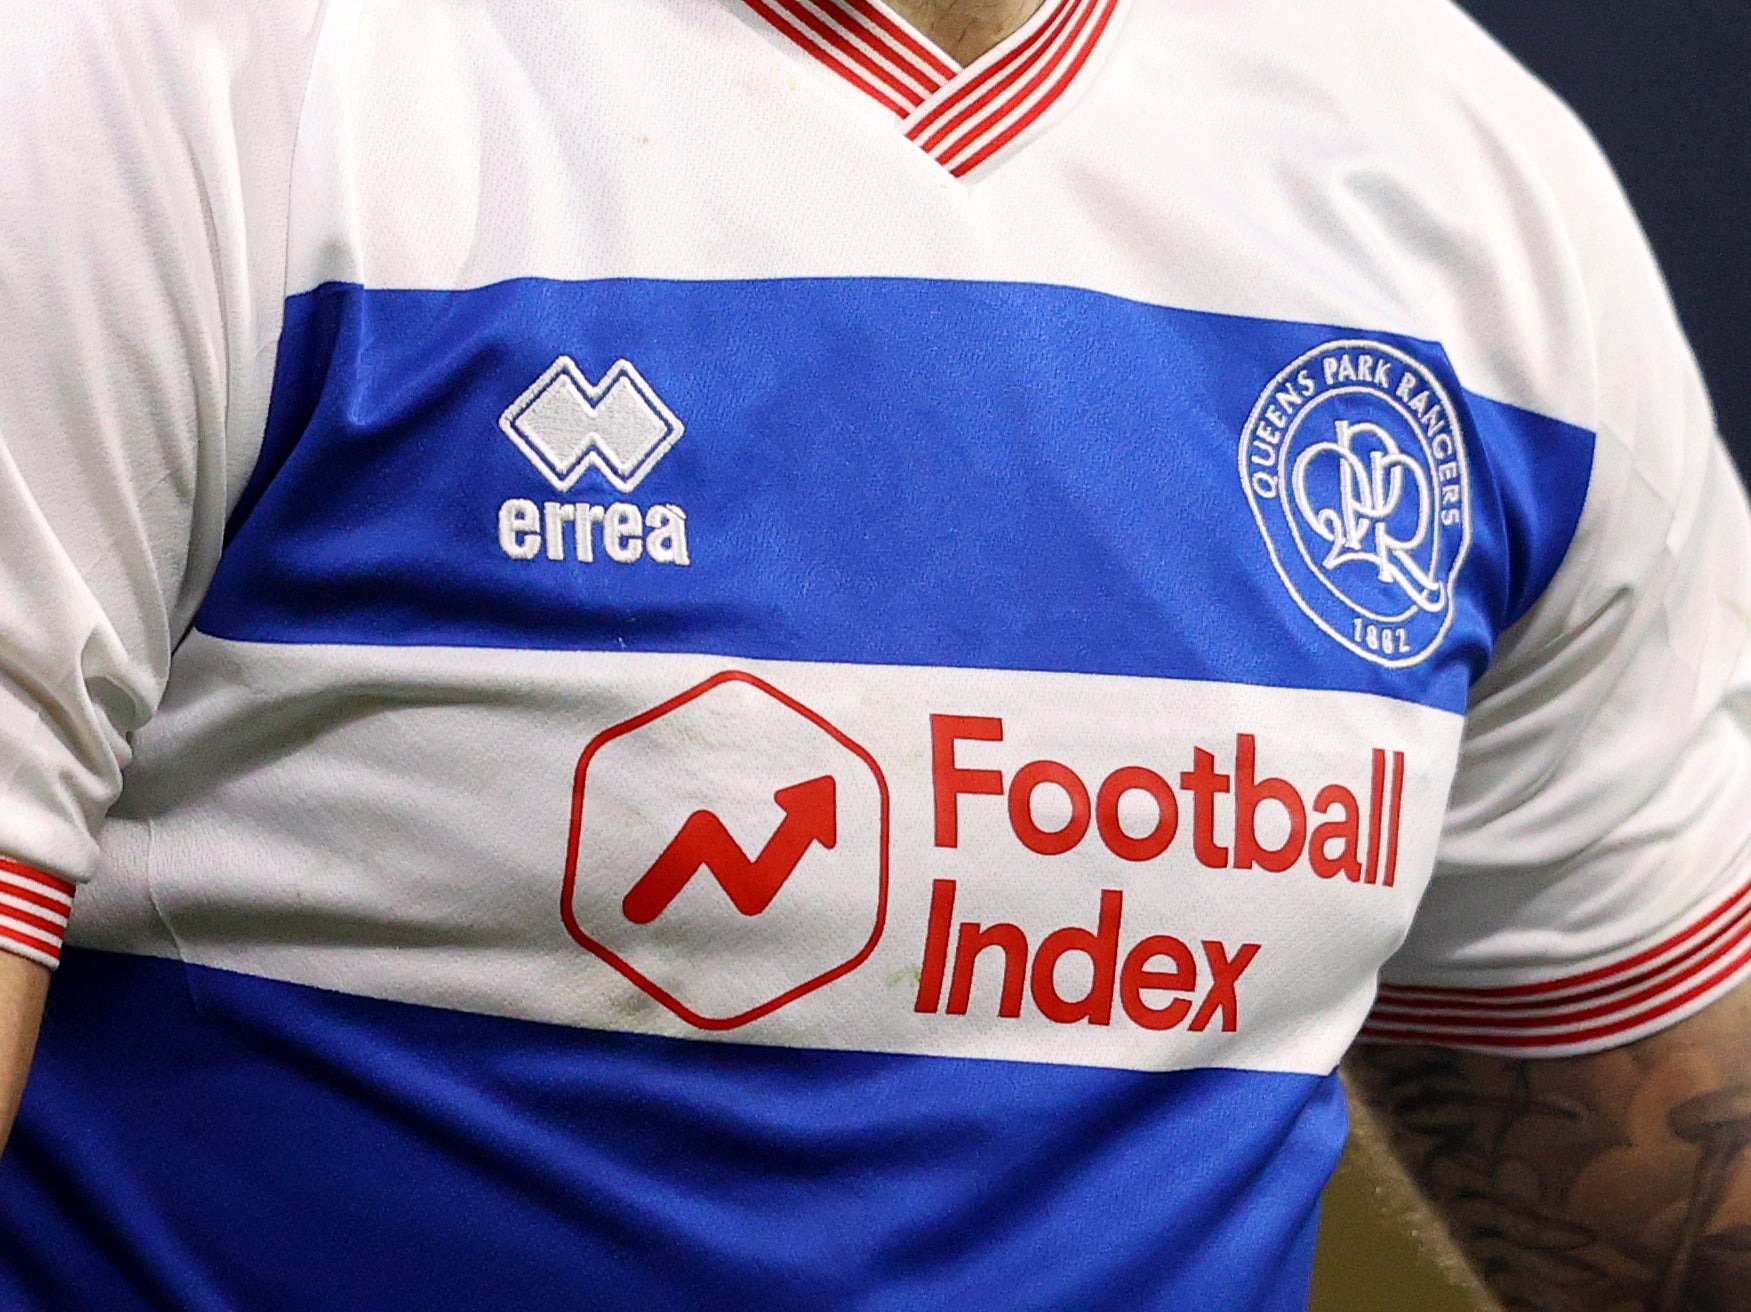 Football Index sponsors Queens Park Rangers